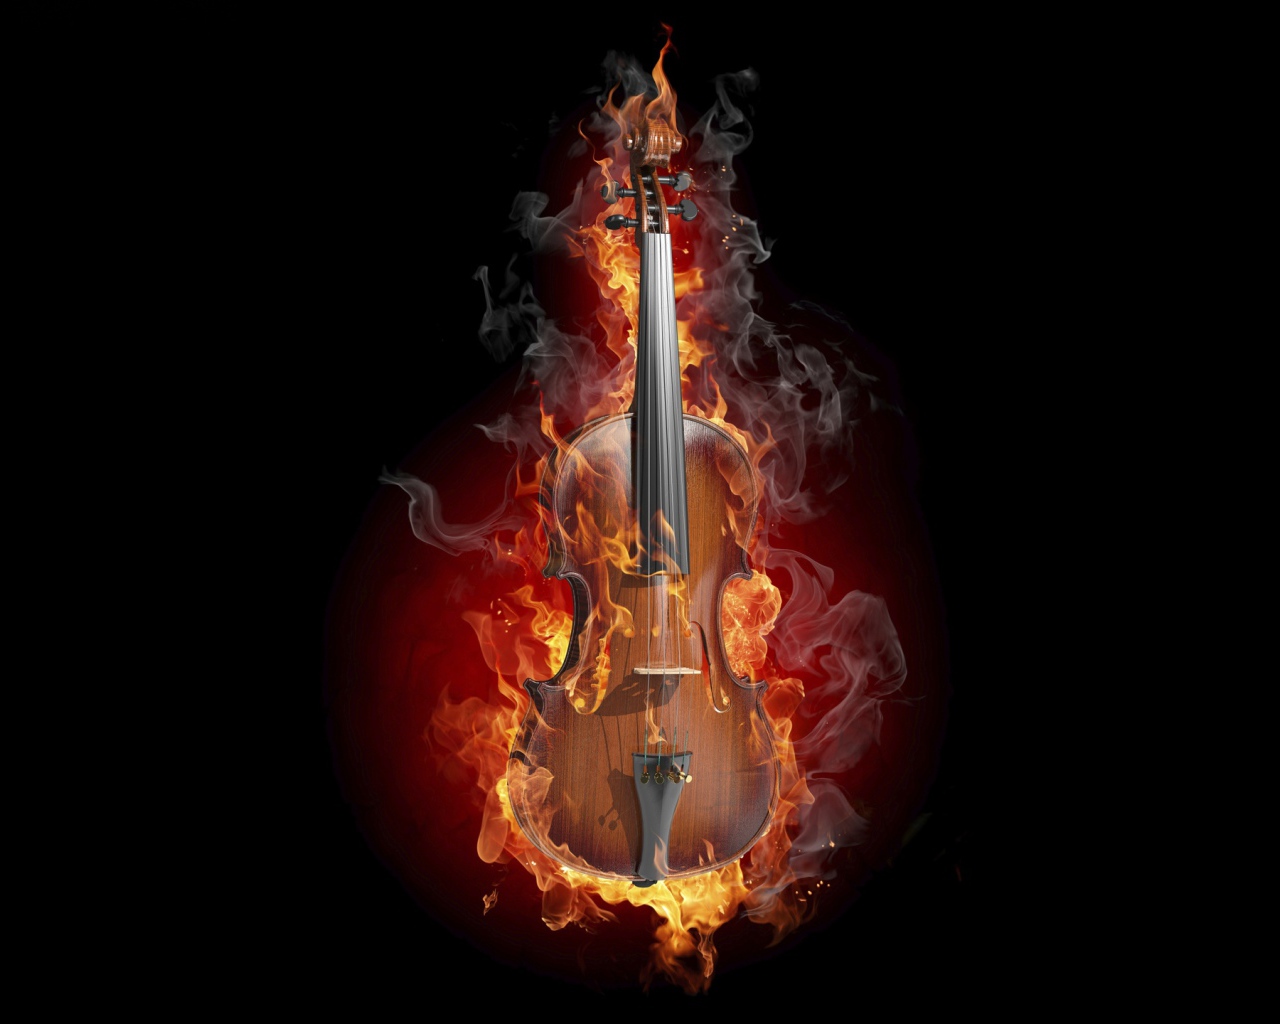 Burning violin on black background